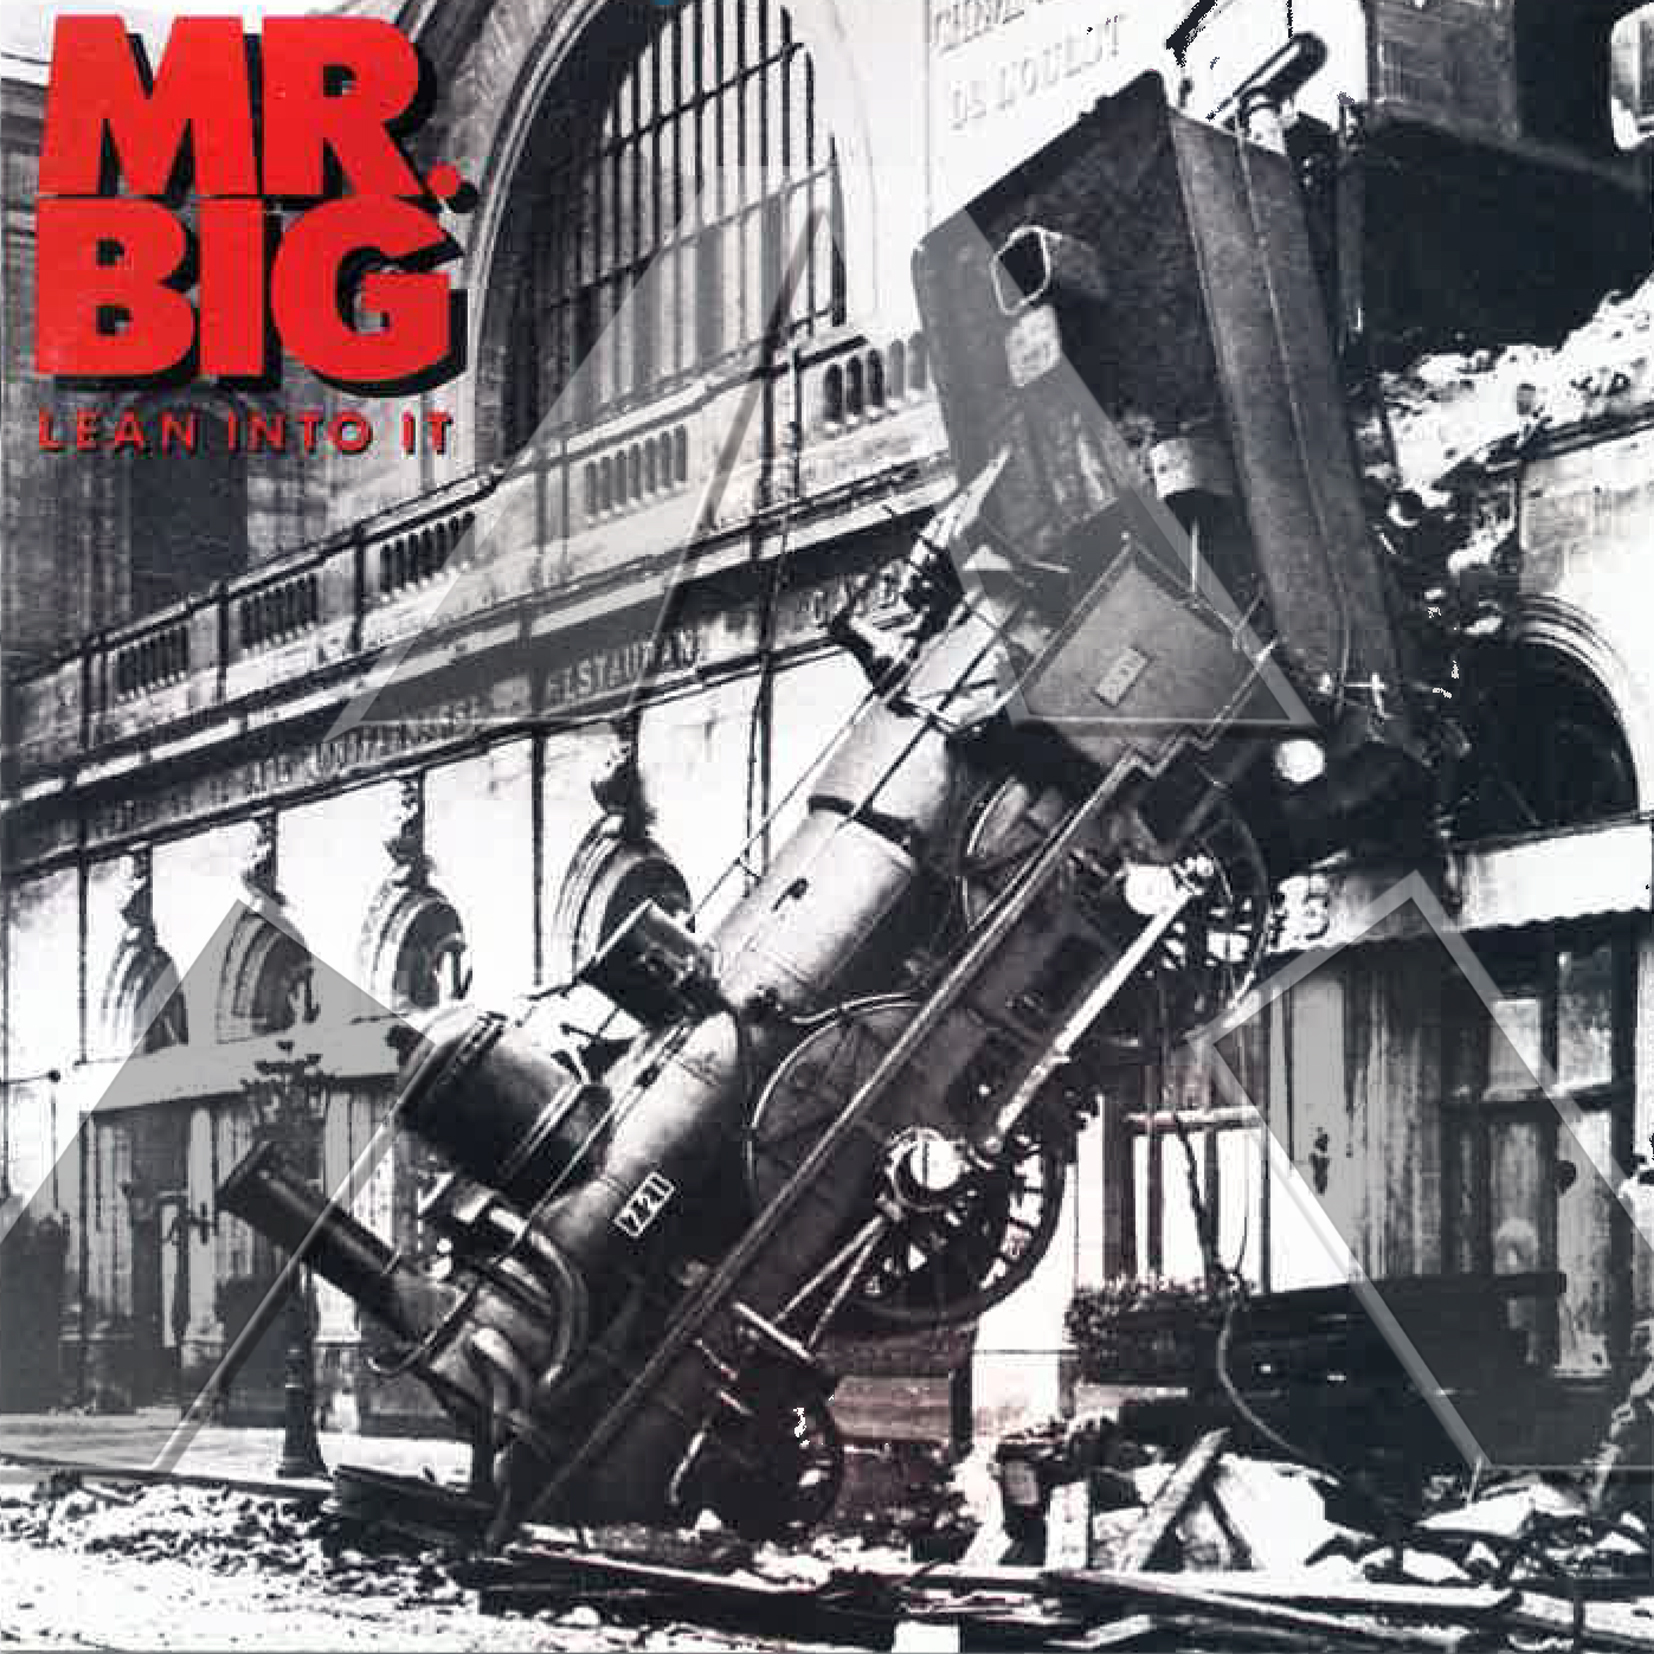 Mr. Big ★ Lean Into It (cd album EU 7567822092)